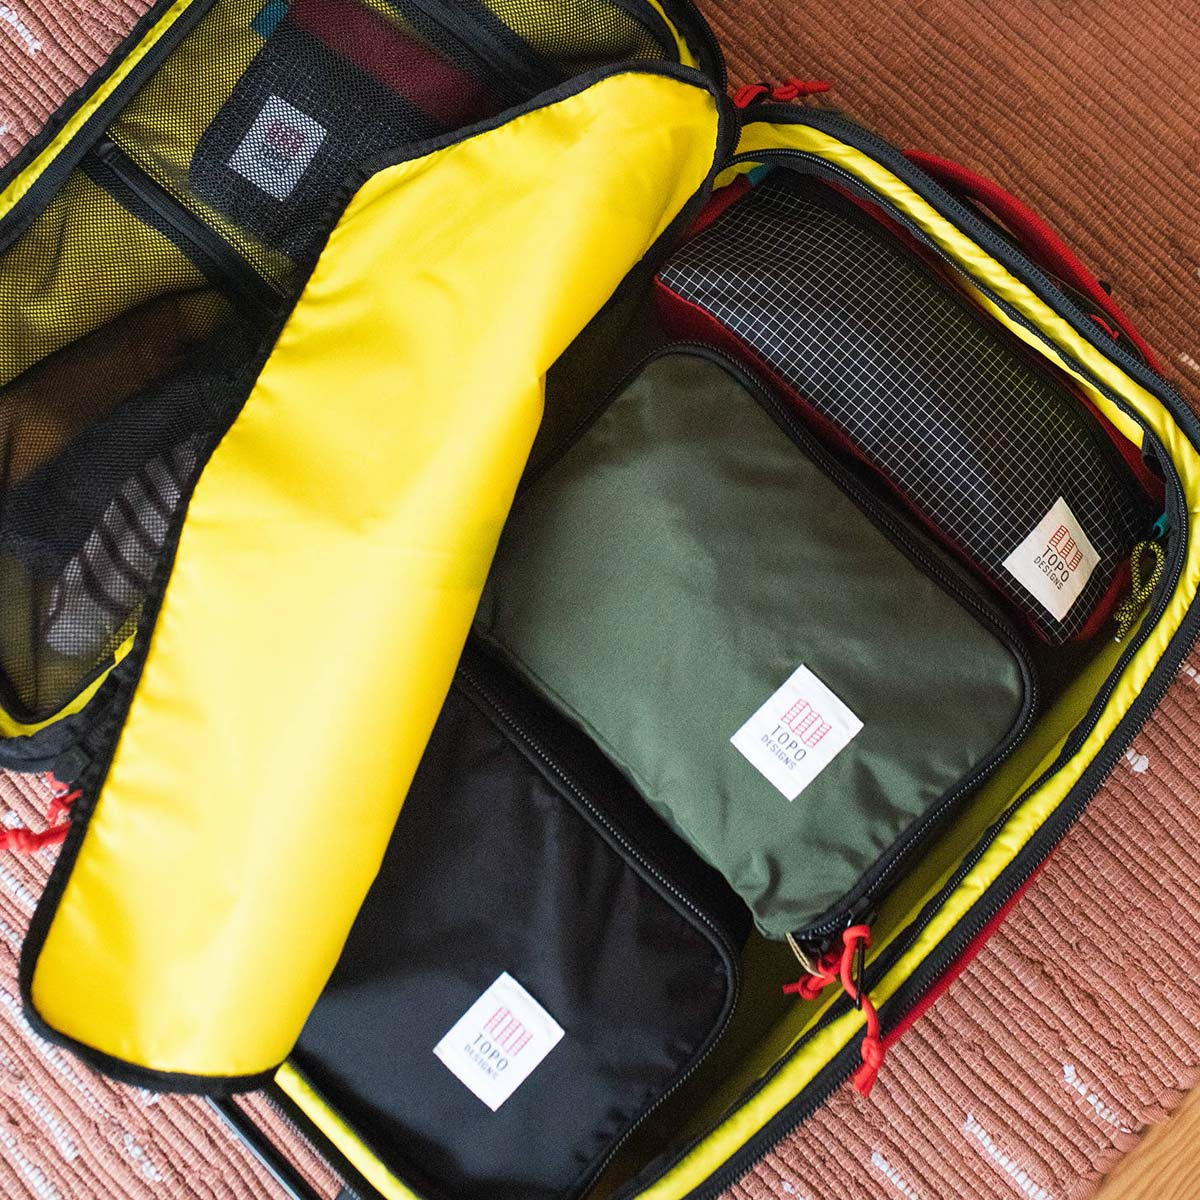 Topo Designs Pack Bag 5L Black, die Optimierung Ihres Gepäcks war noch nie einfacher